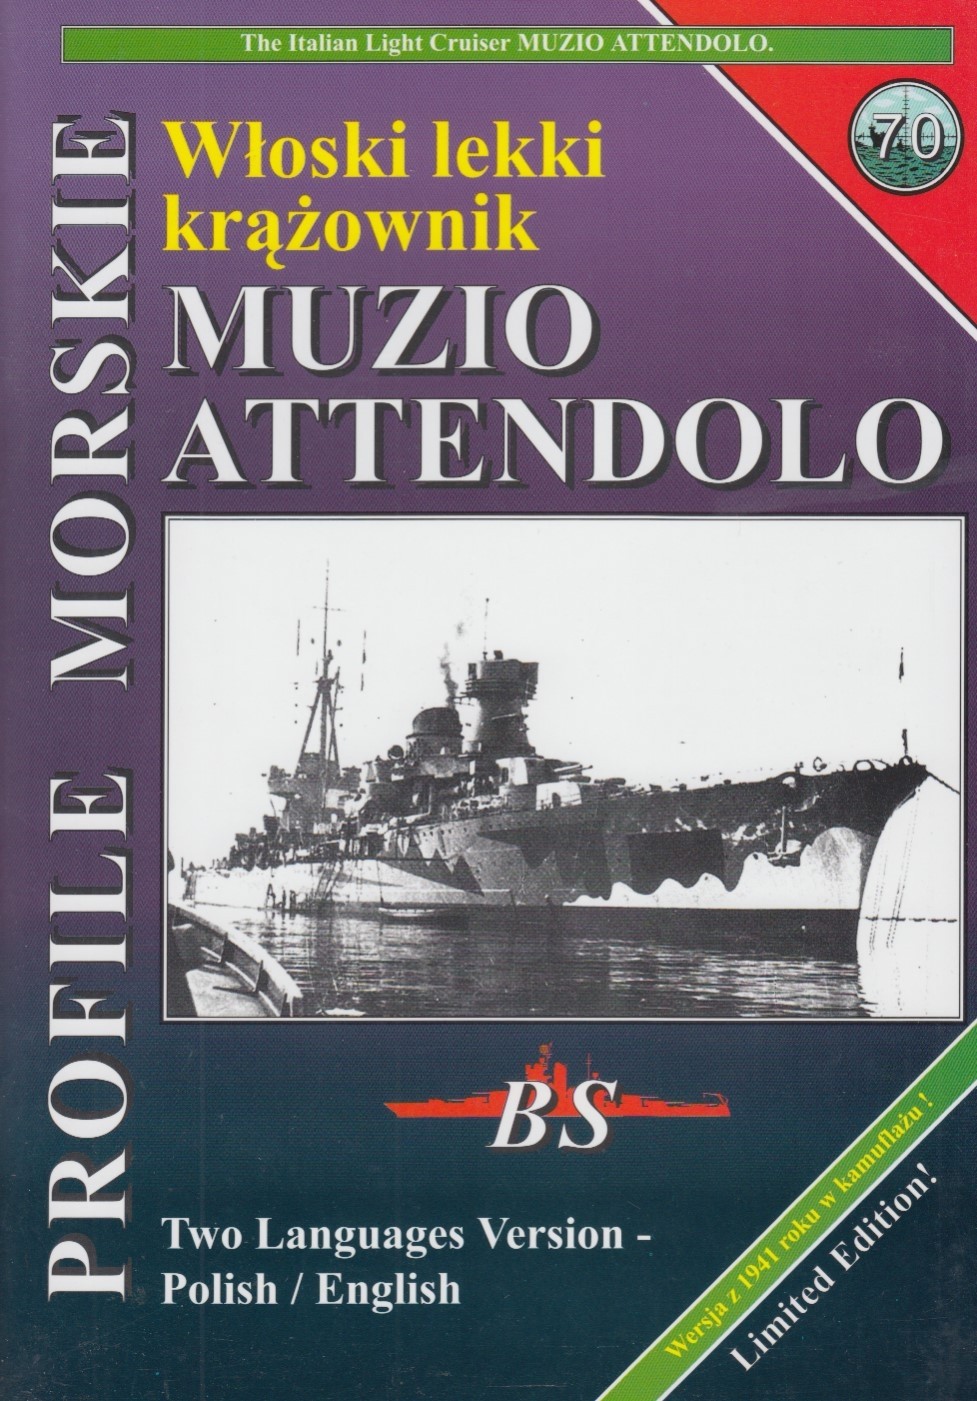 Italian light cruiser MUZIO ATTENDOLO